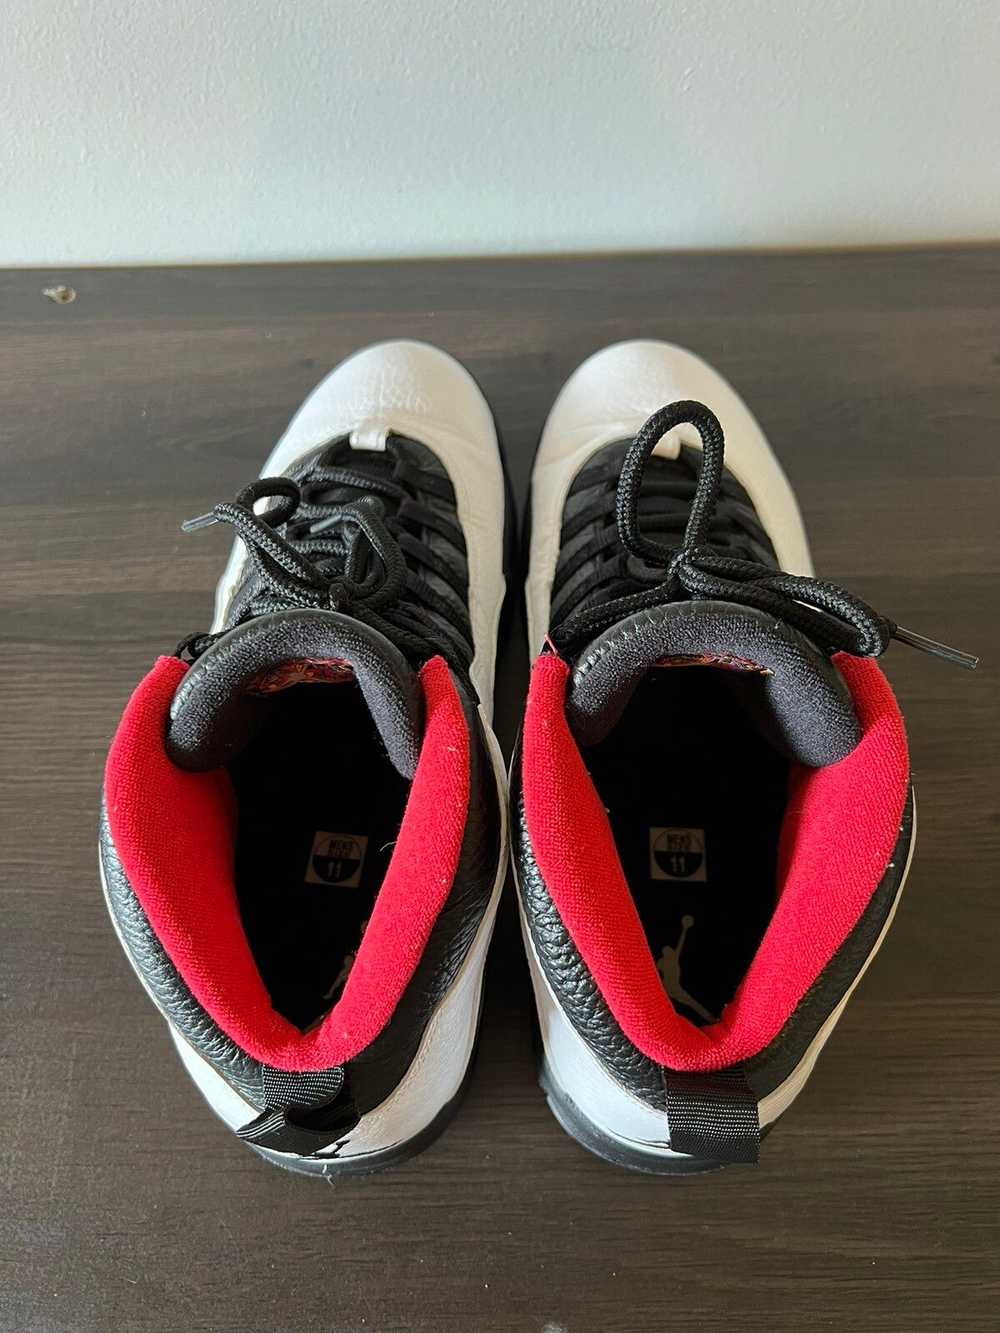 Jordan Brand × Nike Air Jordan 10 “Double Nickel” - image 2